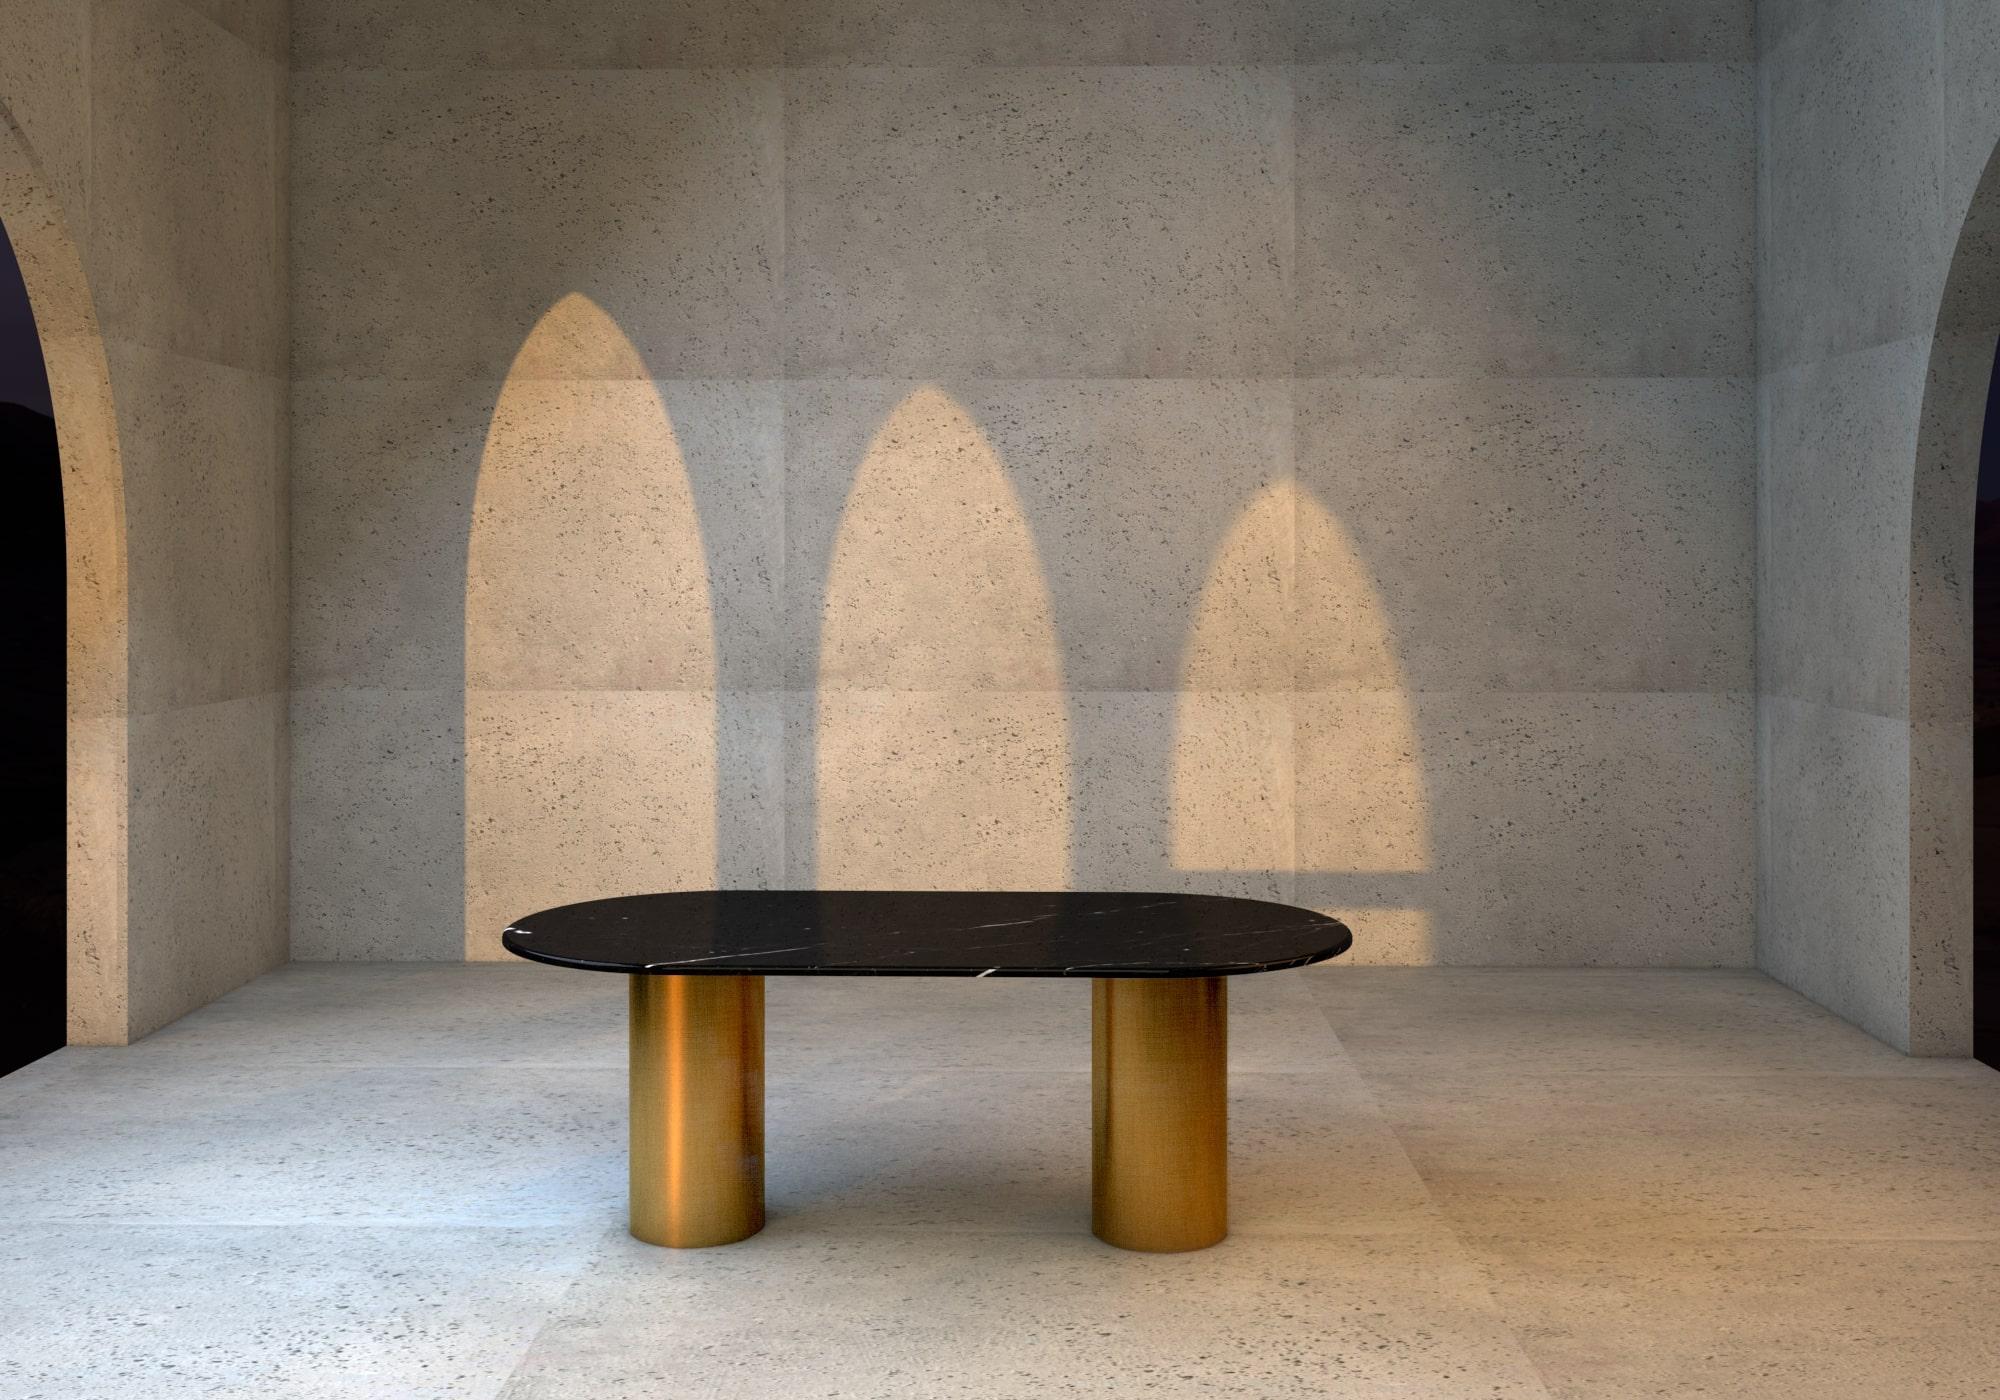 Les formes simples et géométriques de la table à manger Ovale nq1 créent une esthétique sculpturale et minimale qui se fond dans un jeu fantaisiste entre couleur, matériau et texture.

La structure est composée de deux tubes en acier, décorés d'une